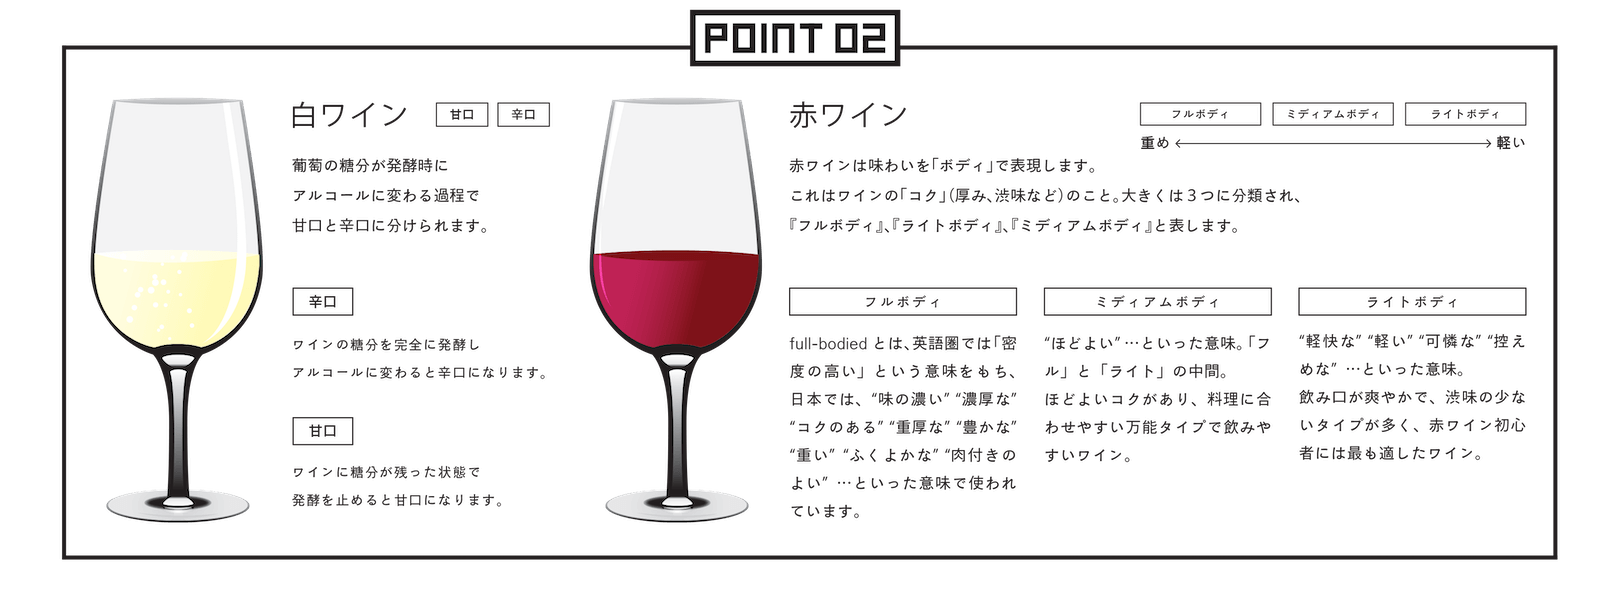 wine_point.jpg